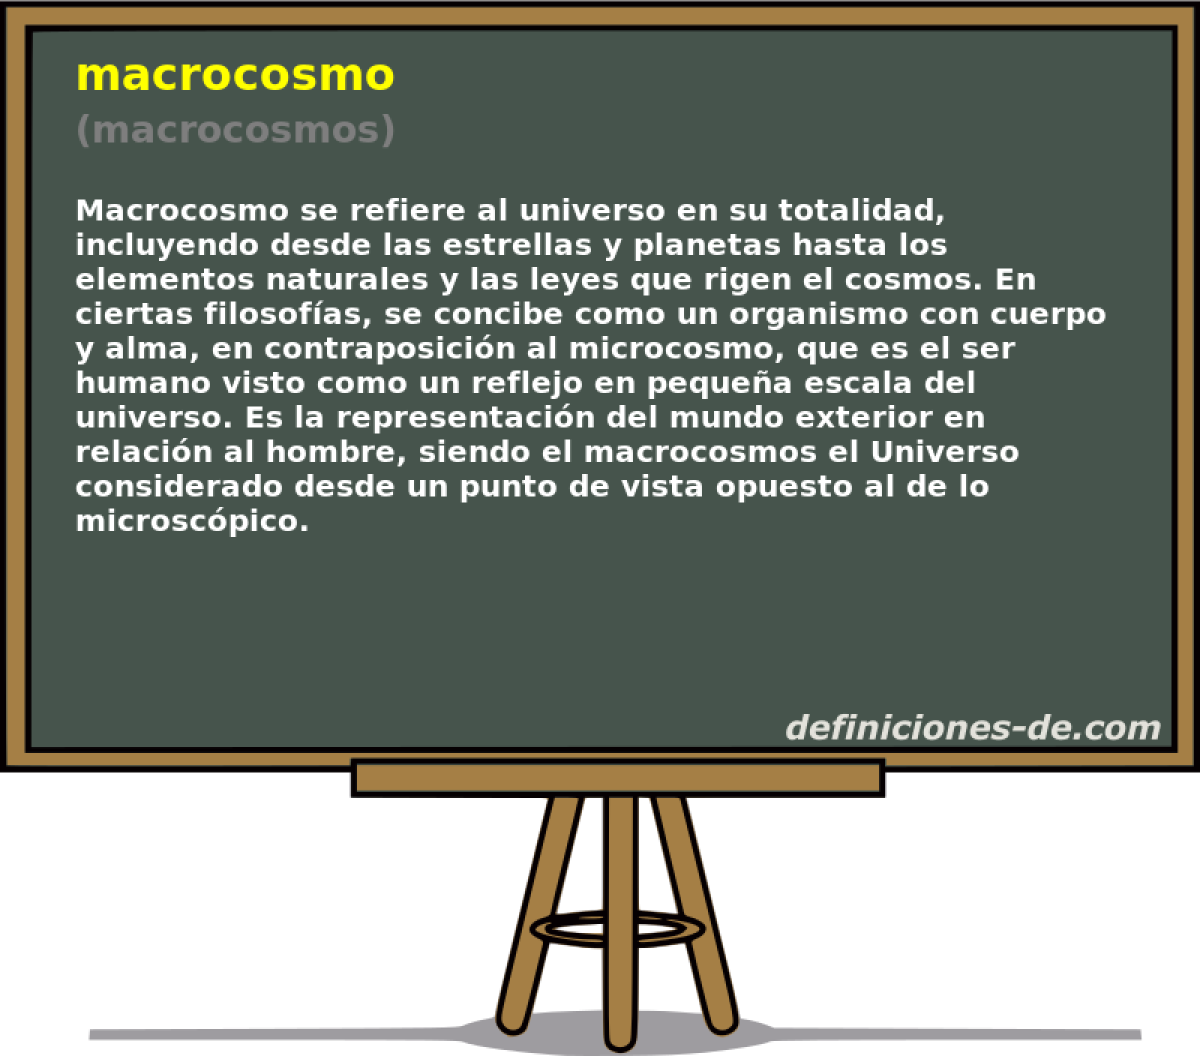 macrocosmo (macrocosmos)